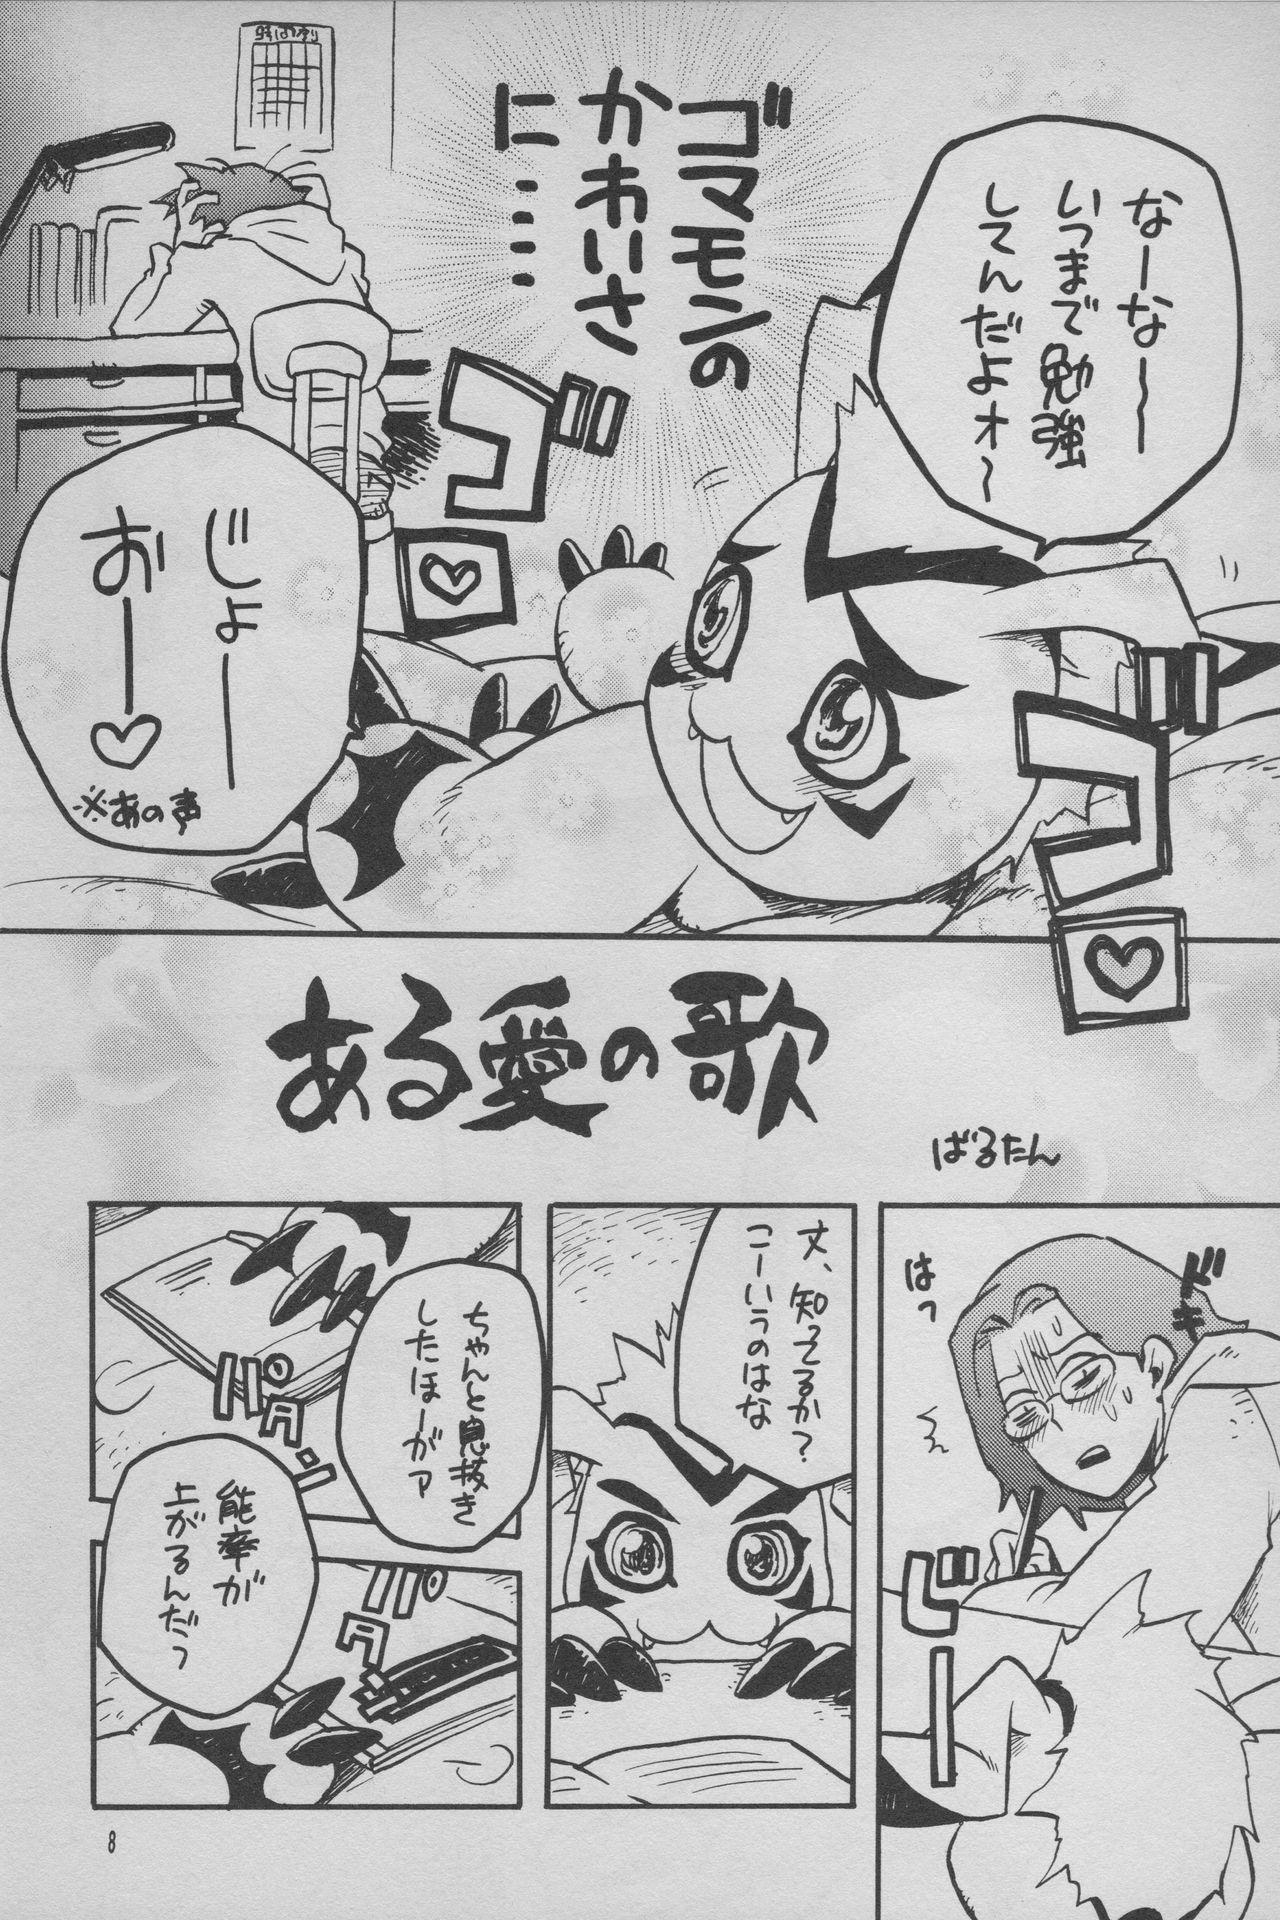 Sex Toys Digimon Bousou Ressha - Digimon frontier Deutsche - Page 9